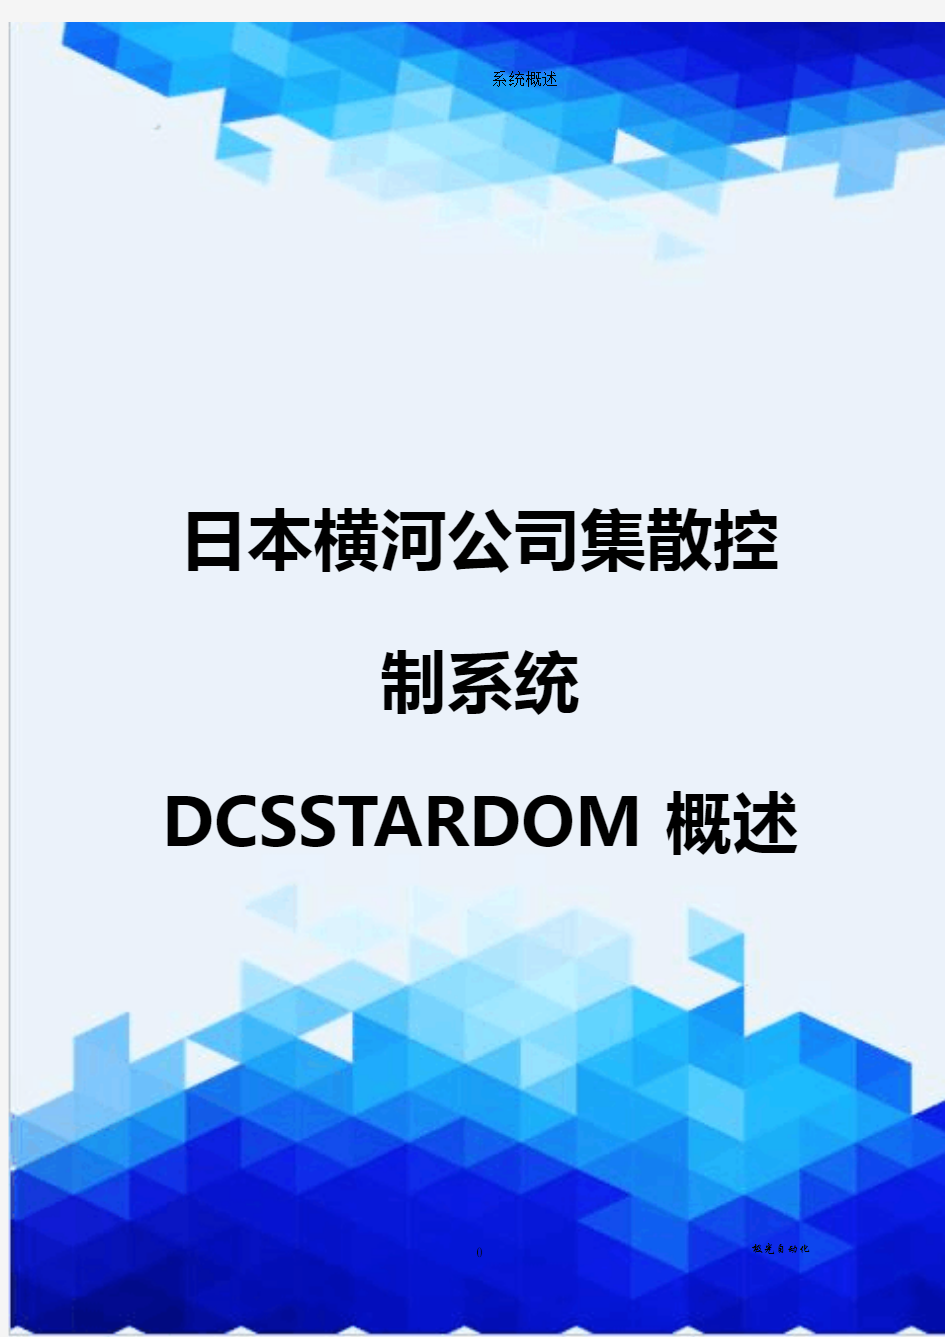 【信息化-精编】日本横河公司集散控制系统DCSSTARDOM概述